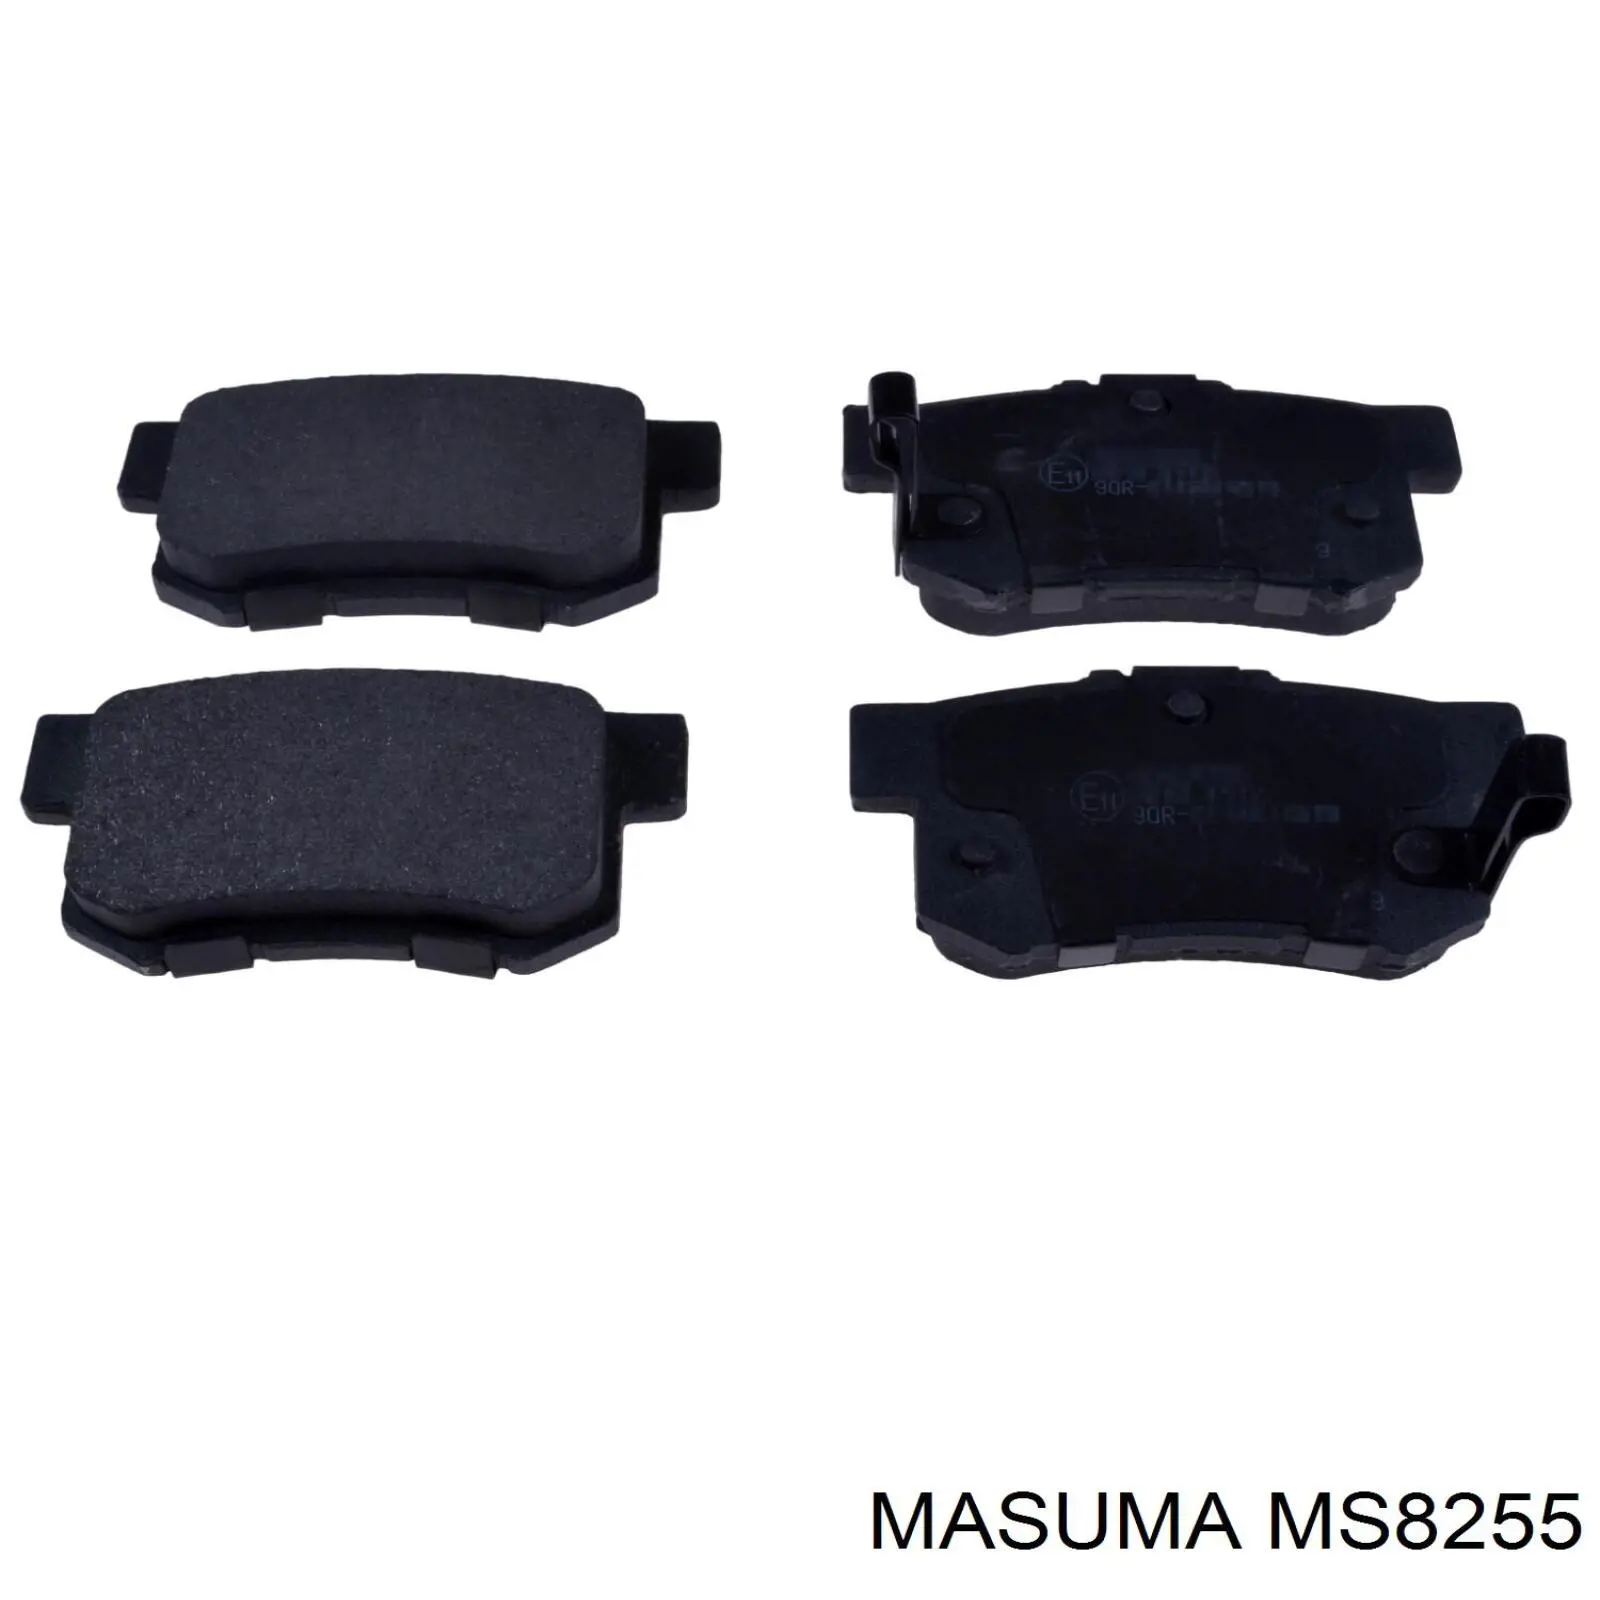 MS8255 Masuma задние тормозные колодки